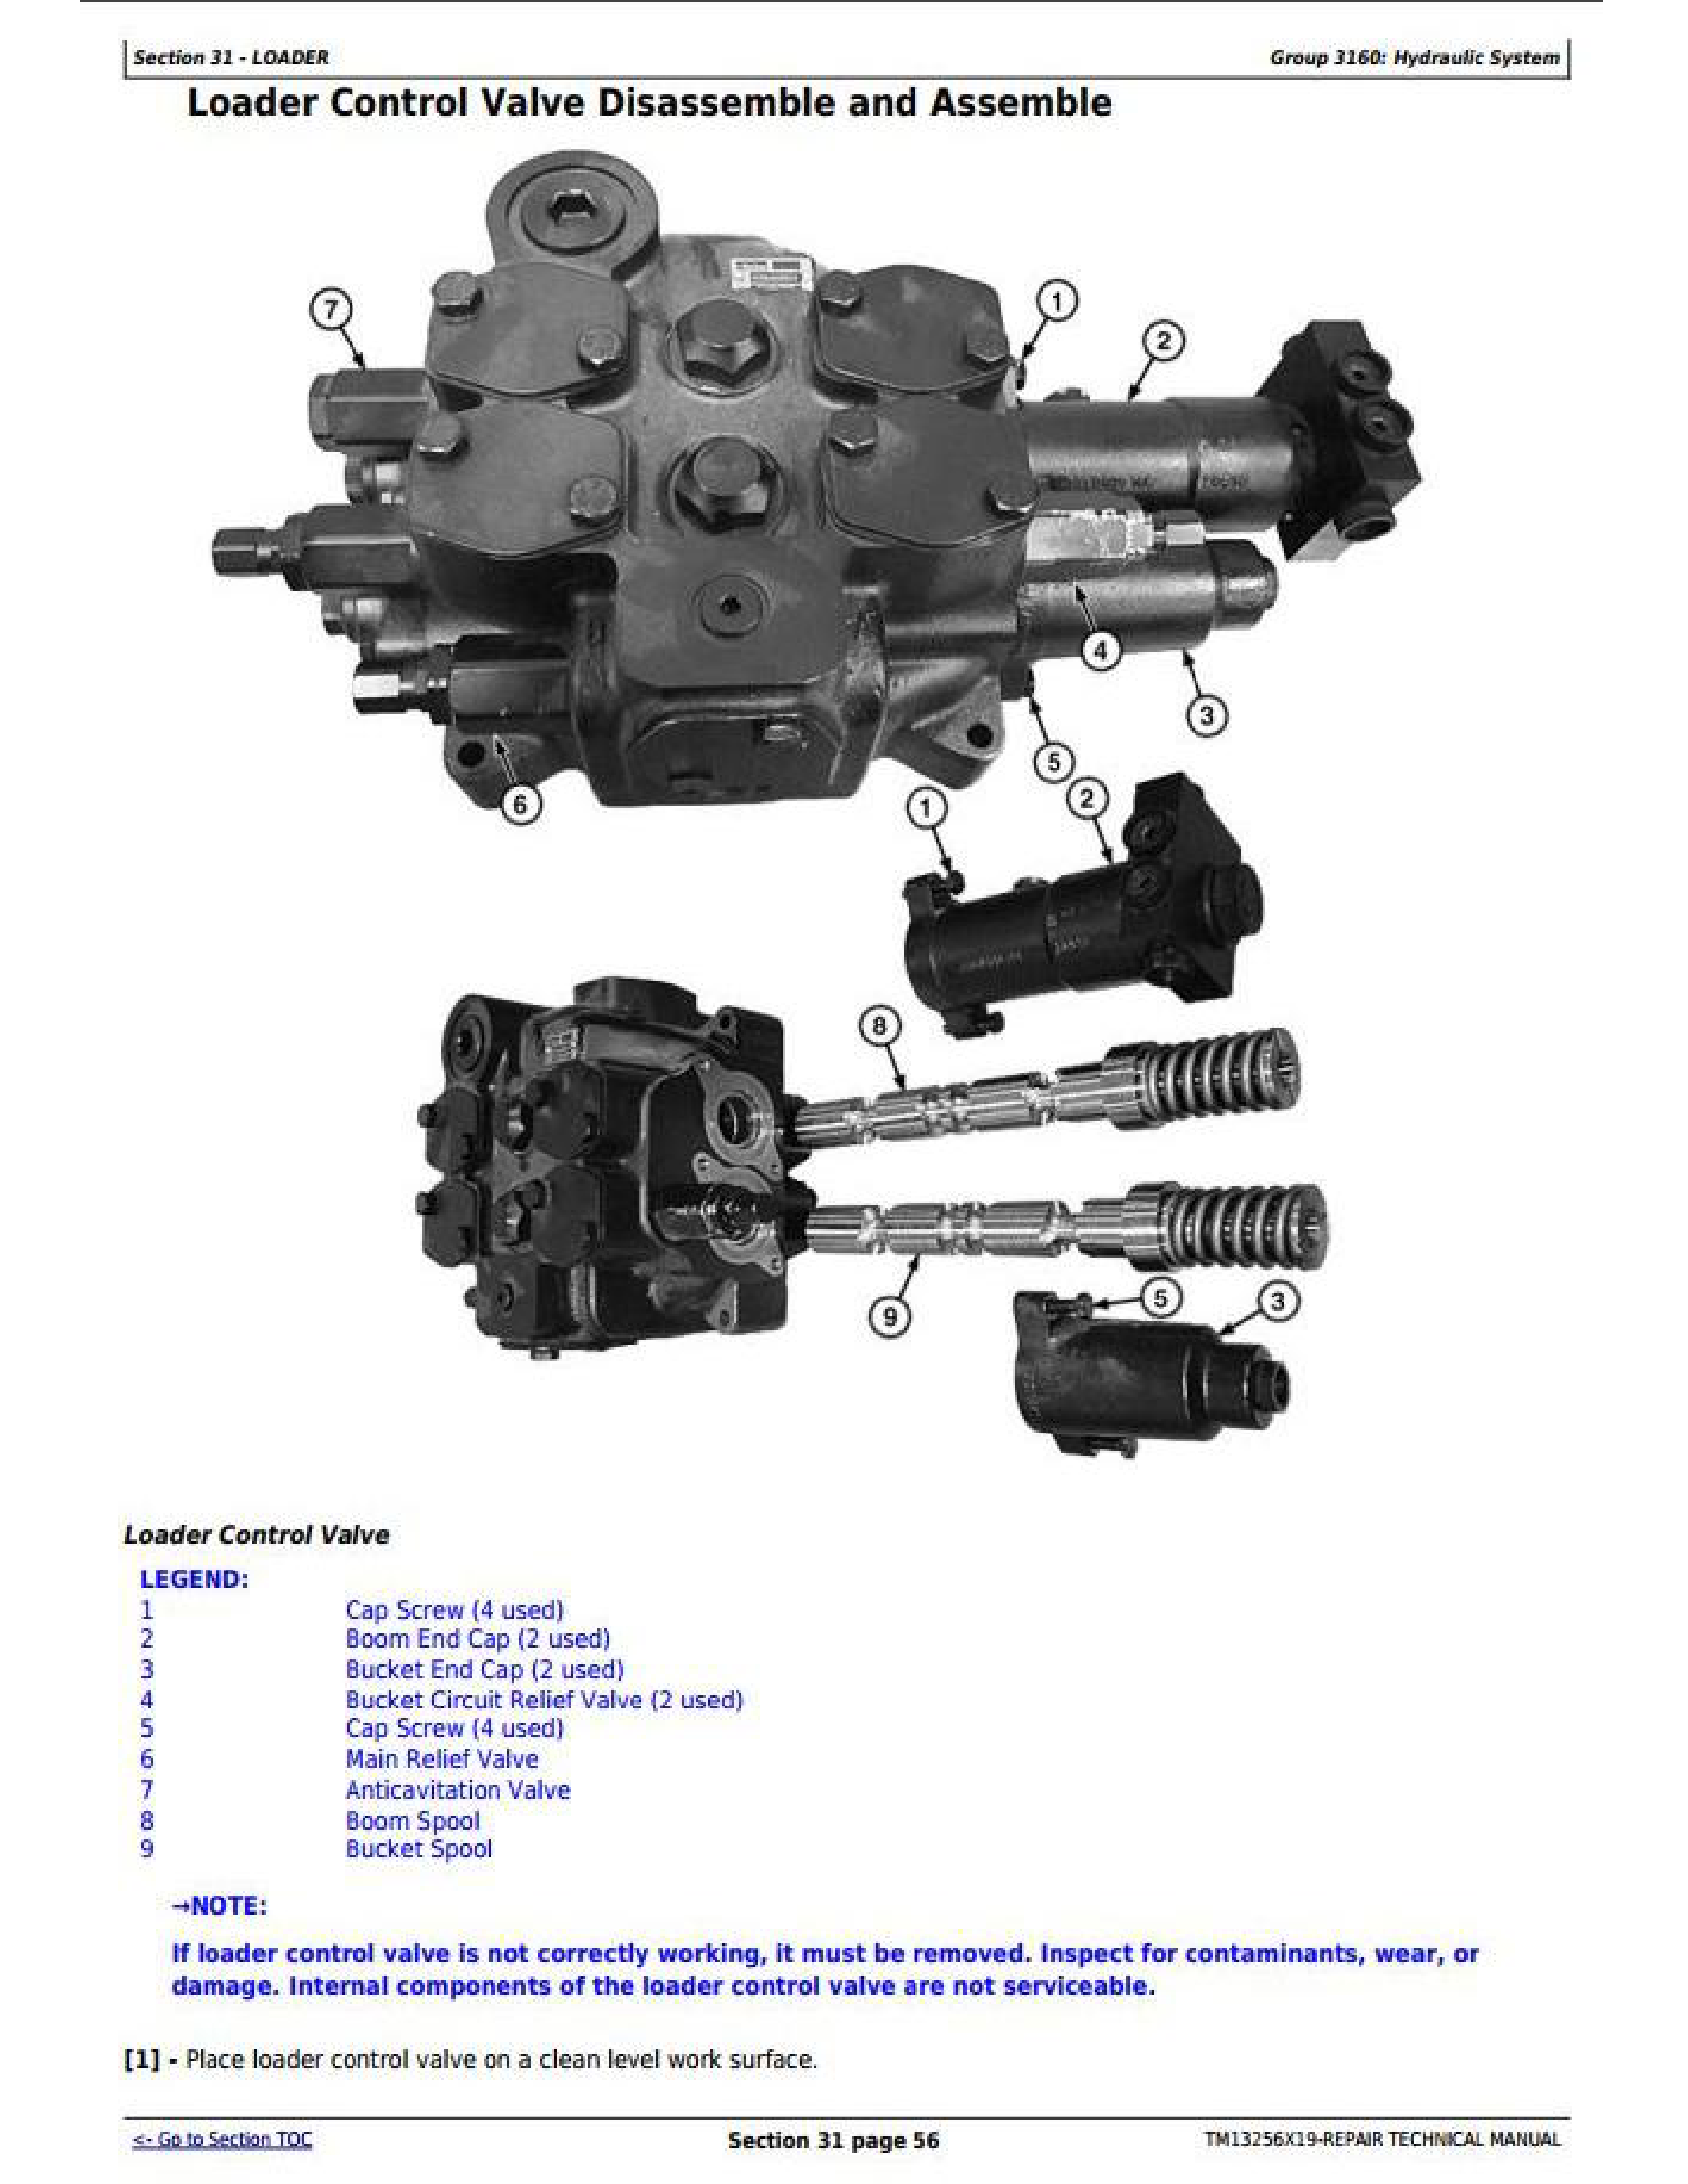 John Deere 110 manual pdf